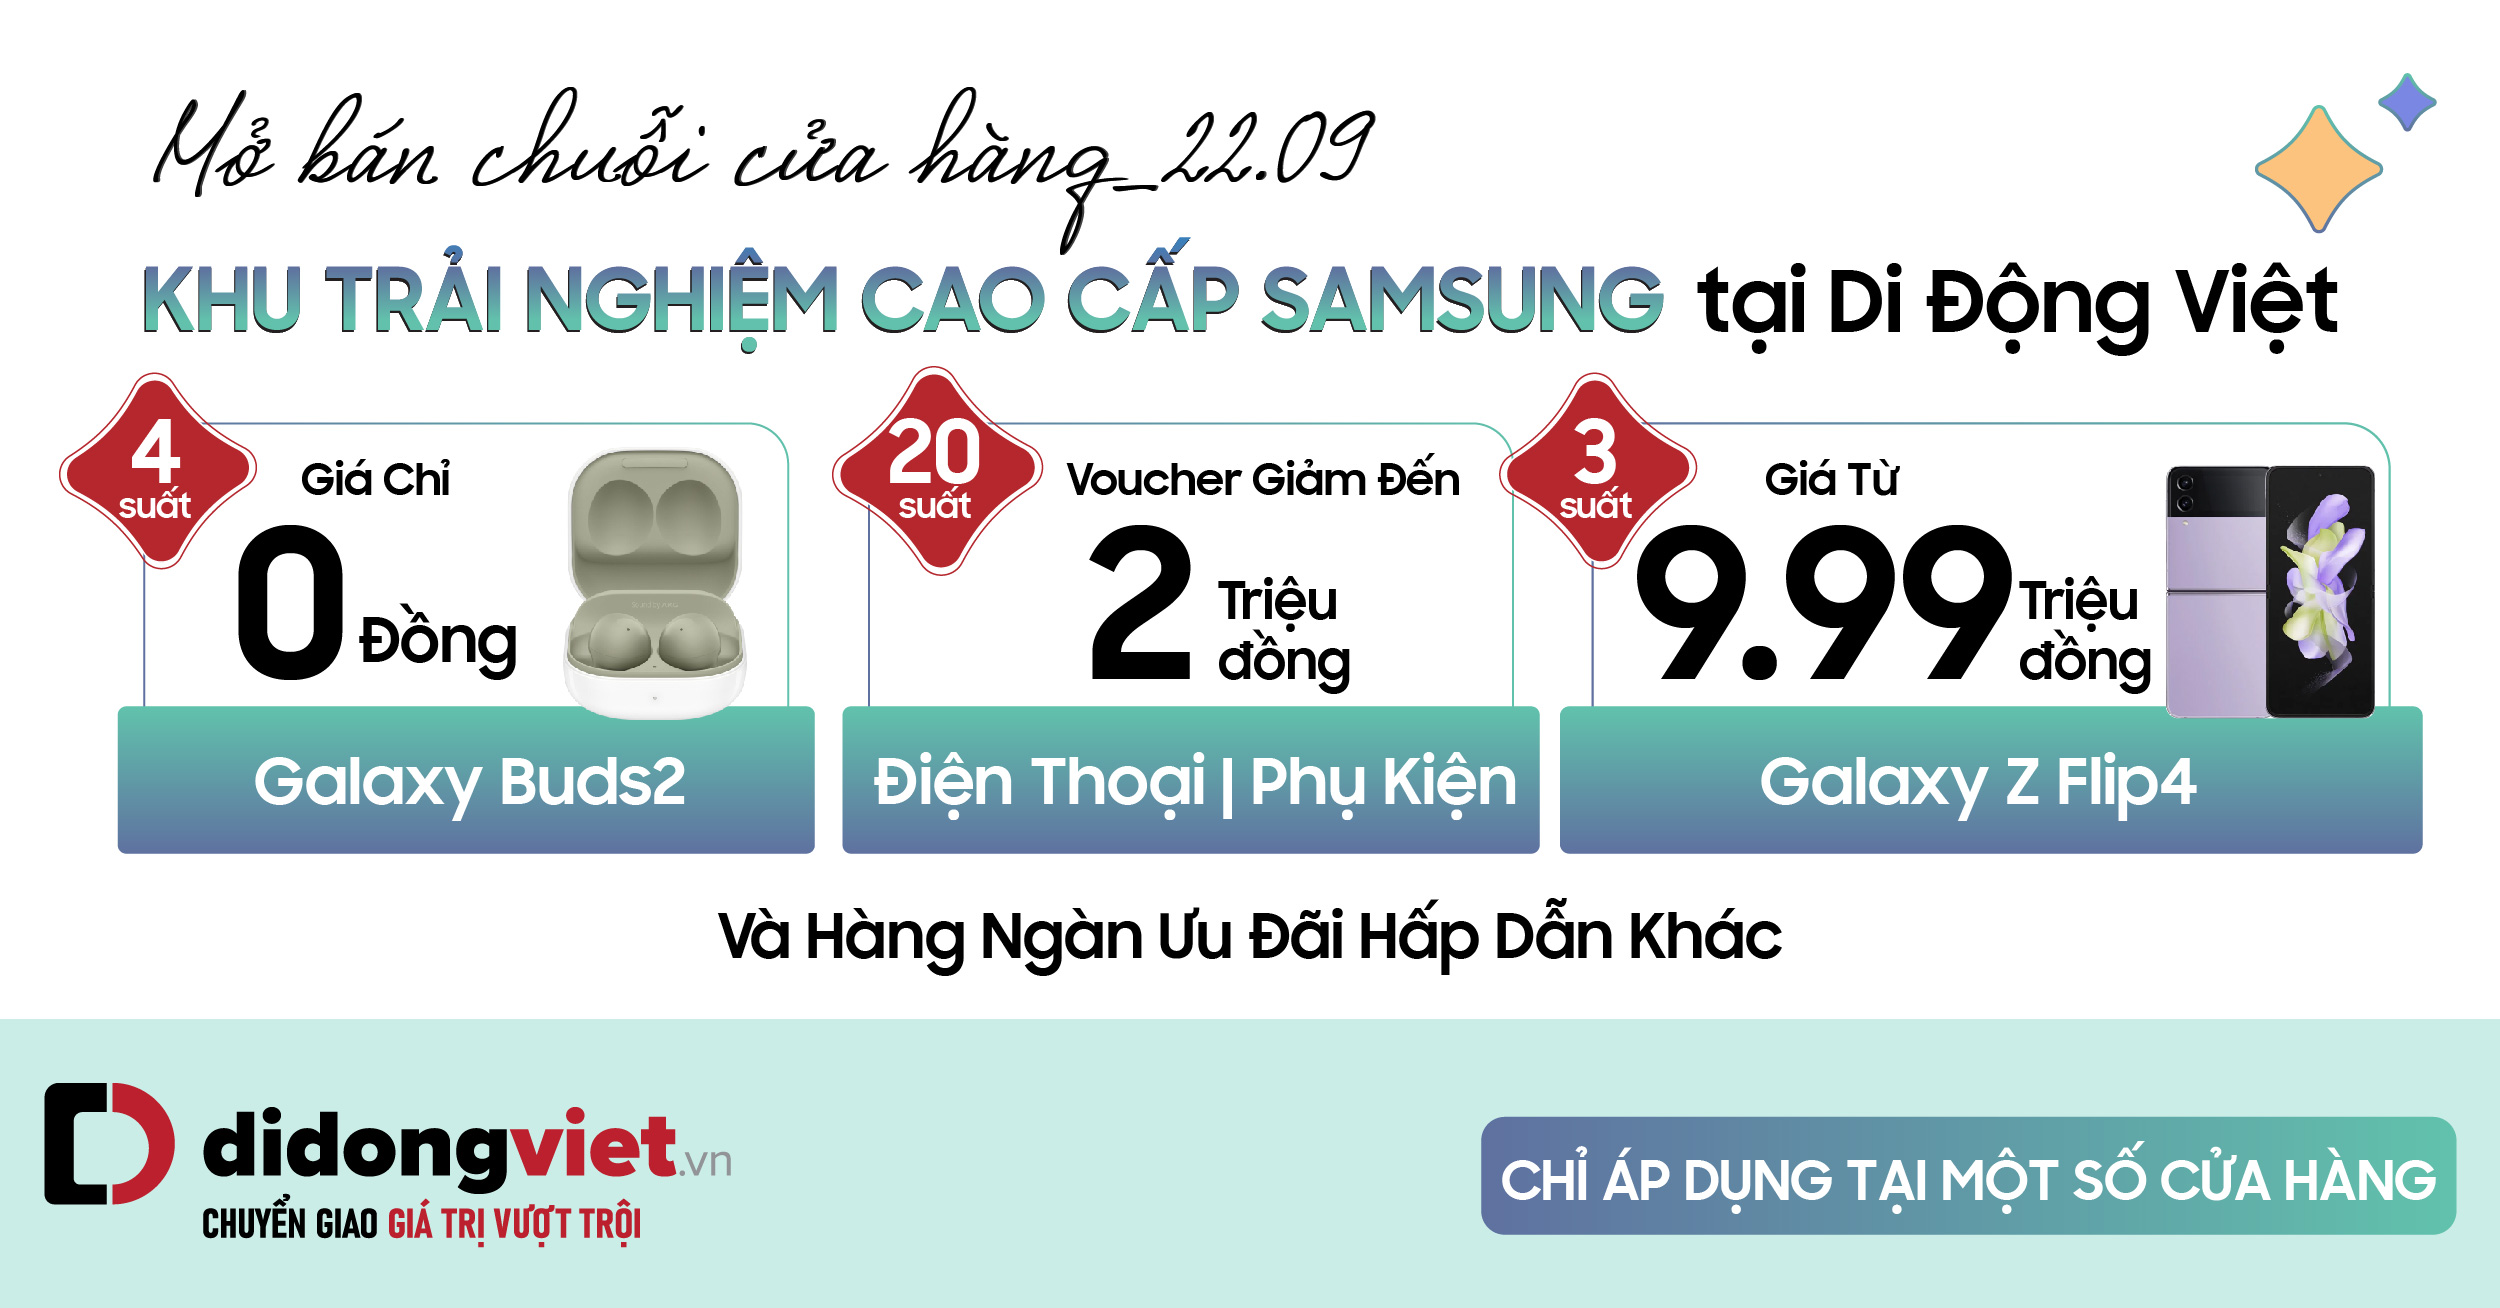 Mở bán chuỗi 9 cửa hàng khu trải nghiệm cao cấp Samsung tại Di Động Việt: 3 suất Galaxy Z Flip4 giá chỉ 9.990K, 20 suất Voucher giảm đến 2 triệu, 4 suất Galaxy Buds2 giá chỉ 0 đồng và hàng ngàn ưu đãi hấp dẫn khác – Duy nhất 22.09